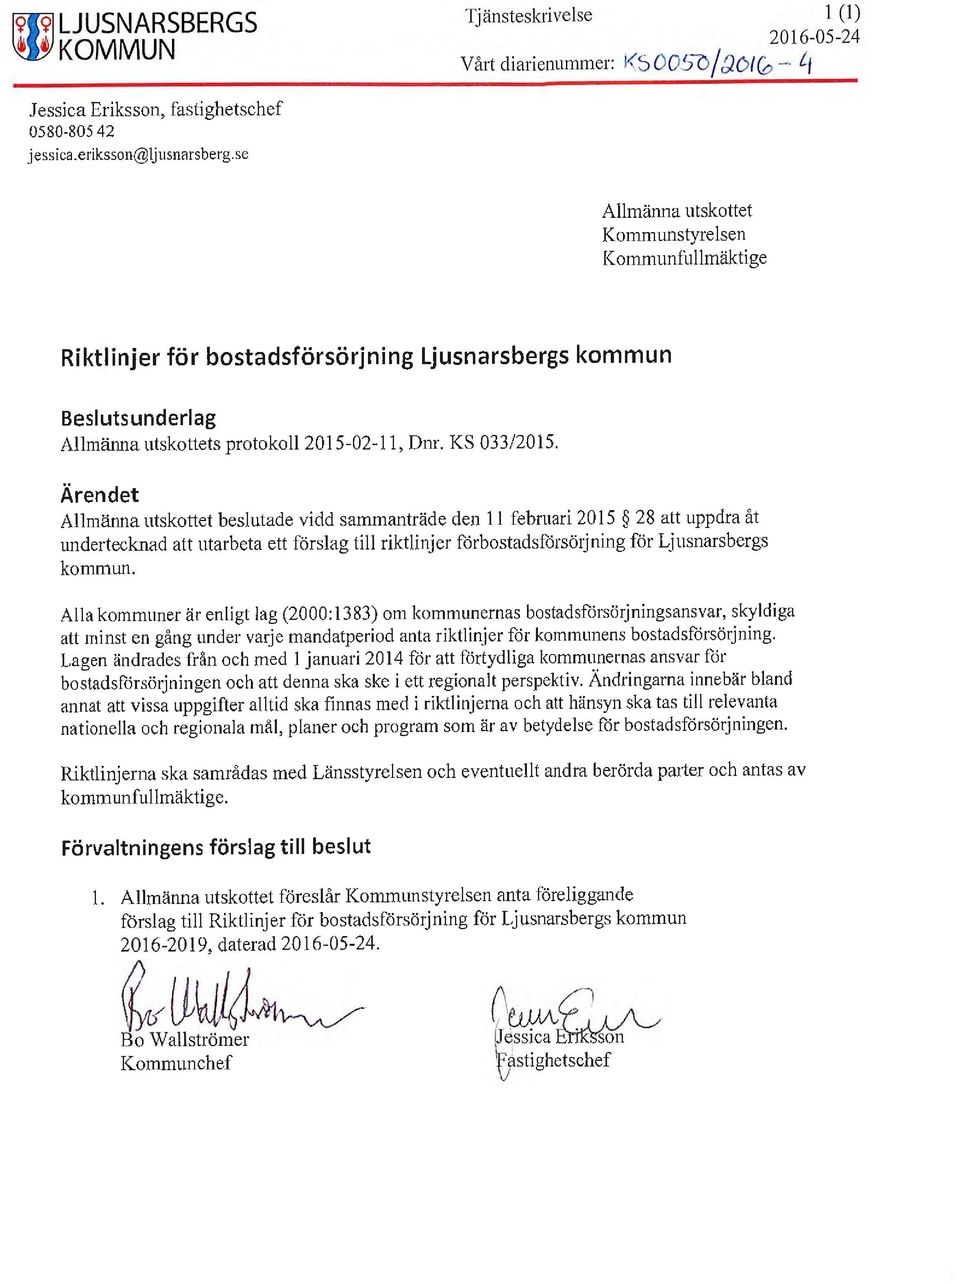 Ärendet Allmänna utskottet beslutade vidd sammanträde den 11 februari 2015 28 att uppdra åt undertecknad att utarbeta ett förslag till riktlinjer förbostadsförsörjning för Ljusnarsbergs kommun.